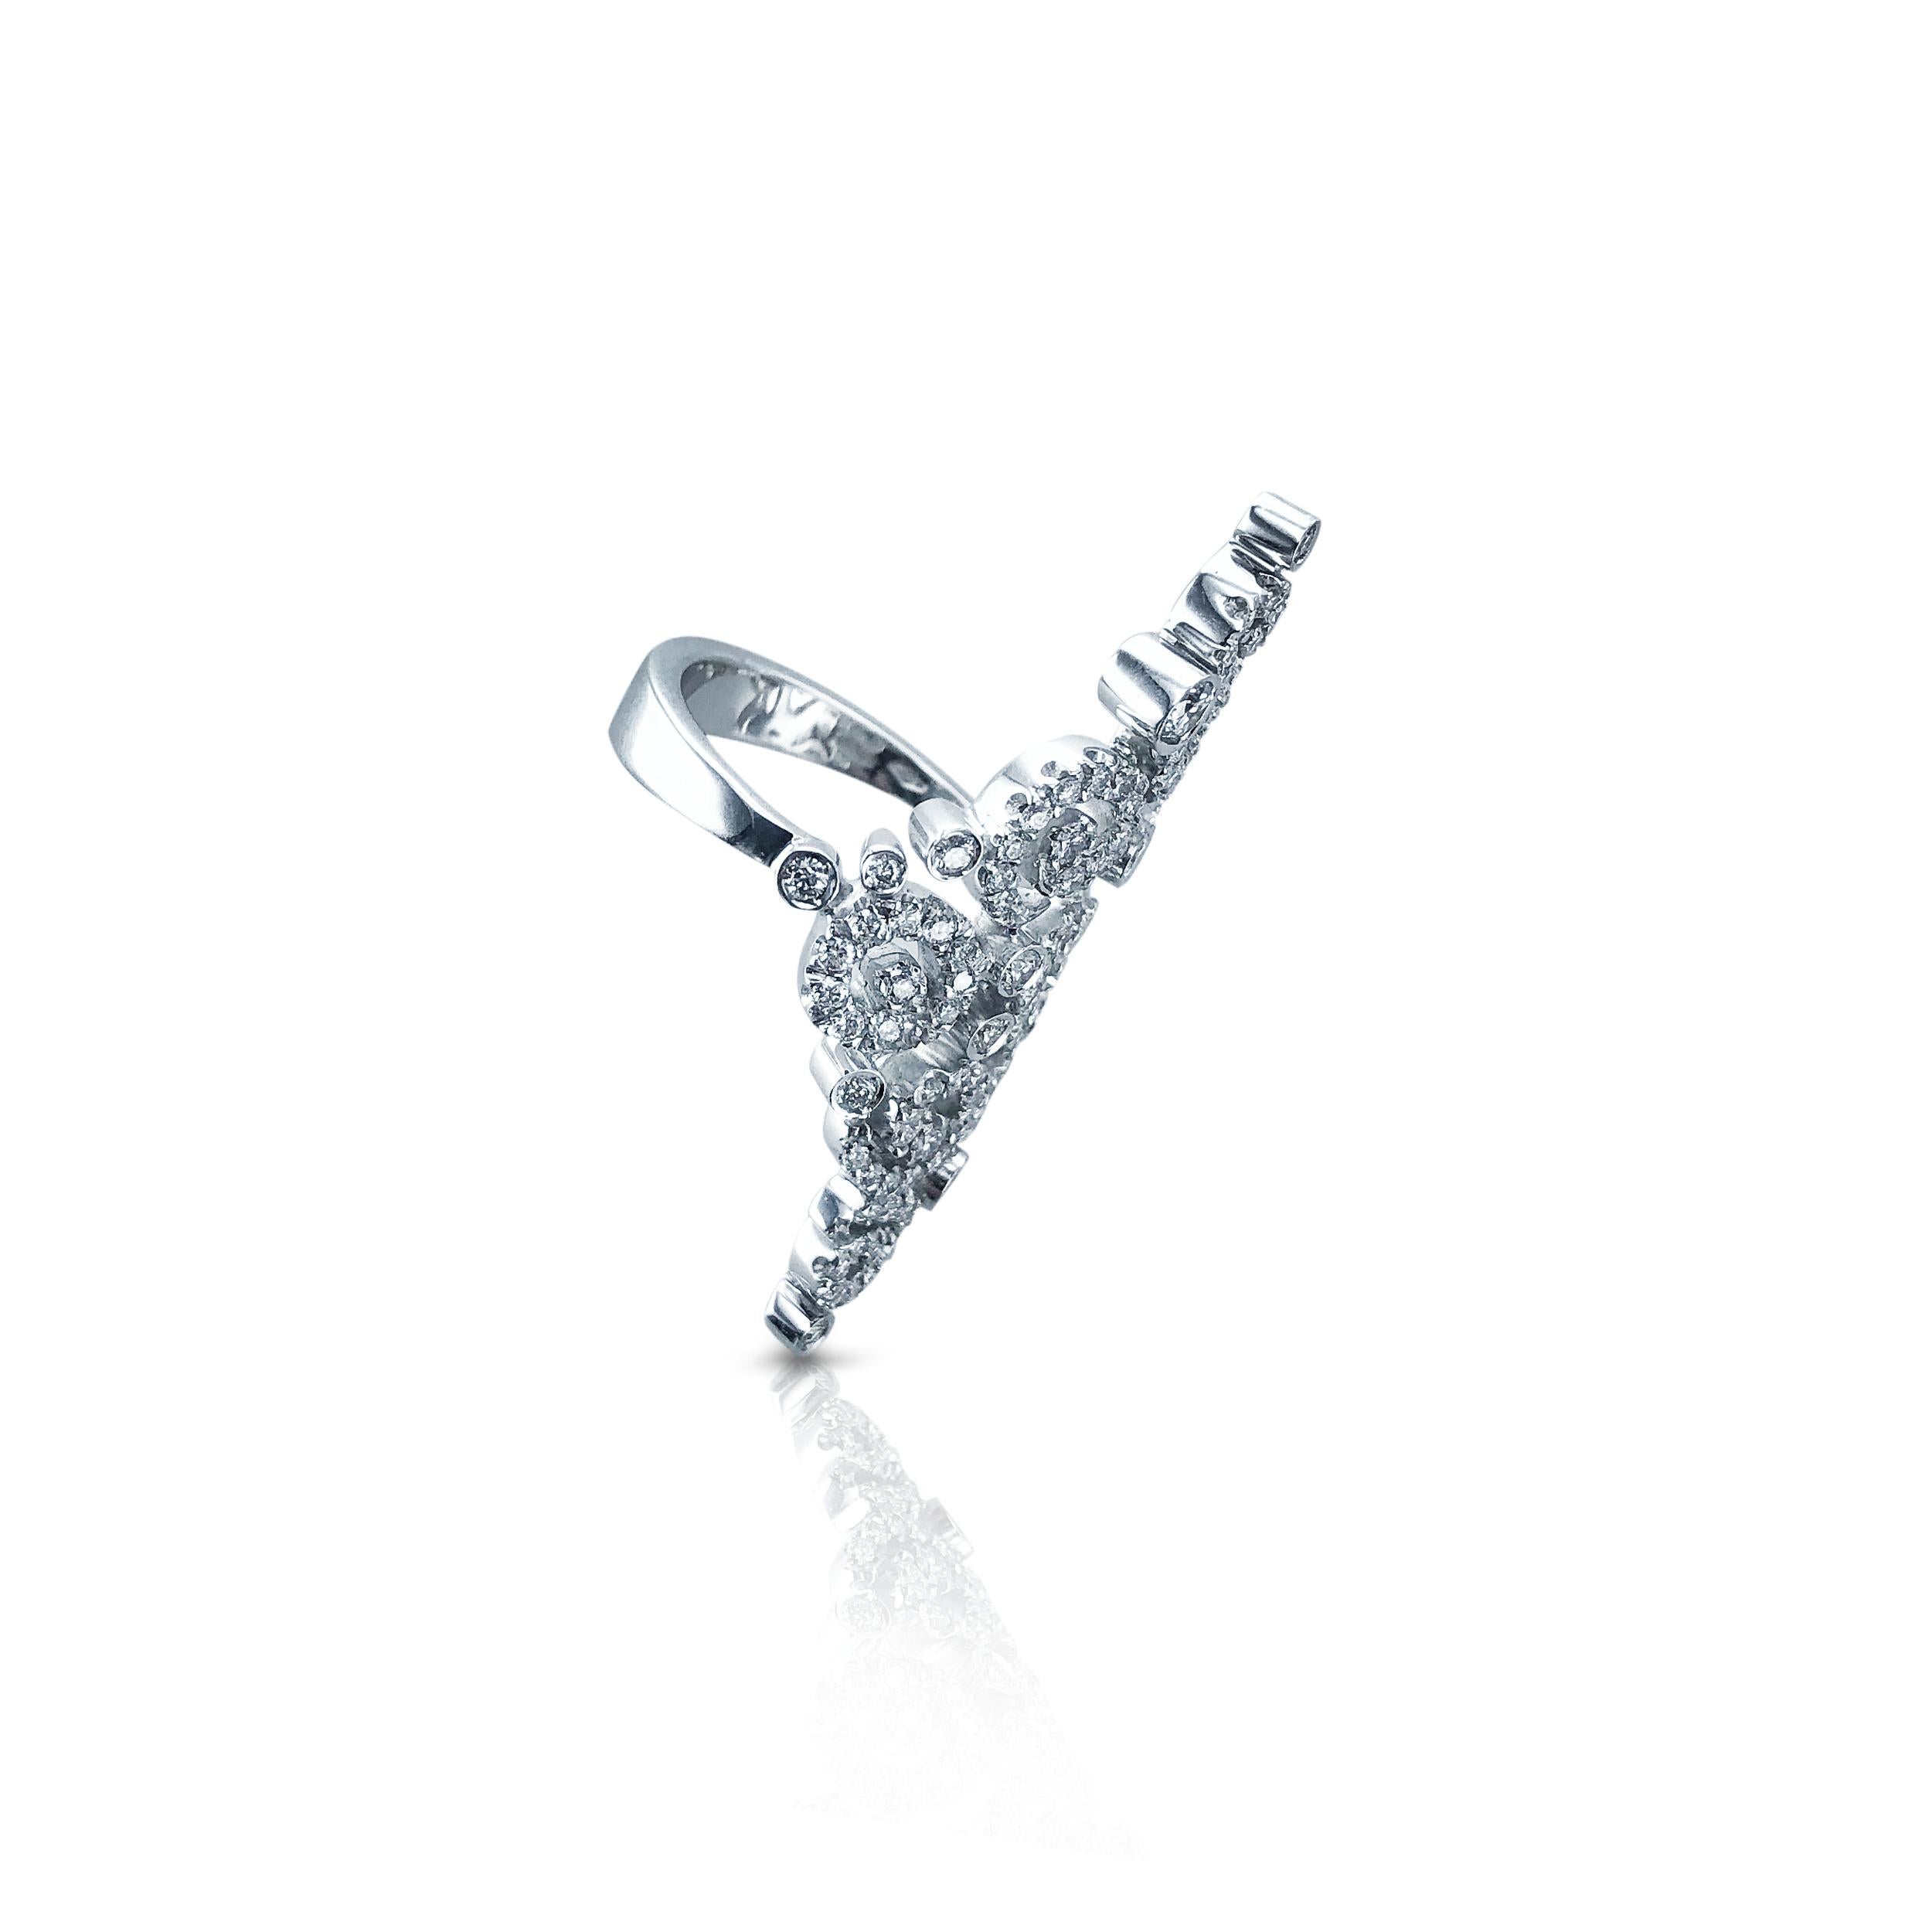 Cette bague Stefan Hafner en diamant de 1,22 carats est sertie en or blanc 18 carats. 
Avec ses motifs complexes et ses multiples tourbillons, il habille le doigt d'une manière unique et frappante. 
Conçu avec une finition pointue, il allonge le